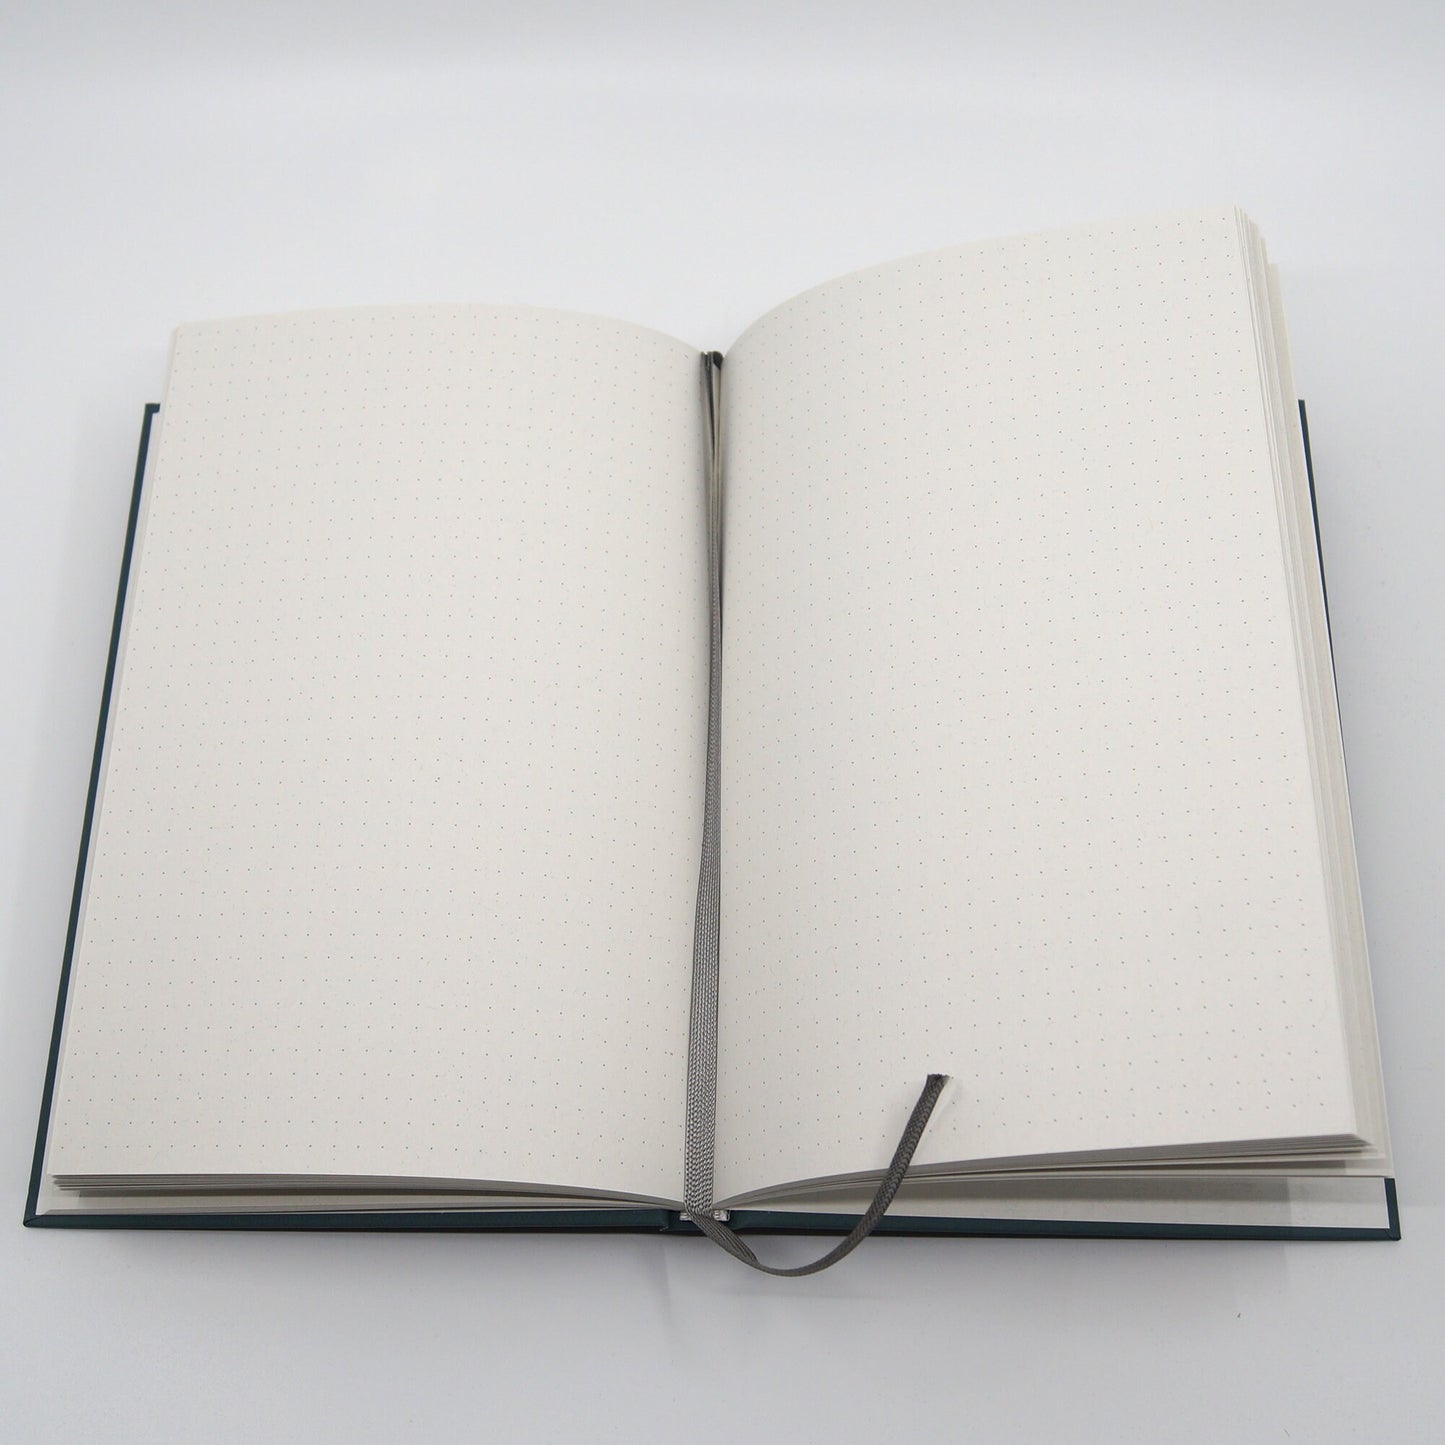 Notizbuch 'Seepferdchen' mit Punktraster - Journal mit Bullet Muster - Din A5 mit Lesezeichen